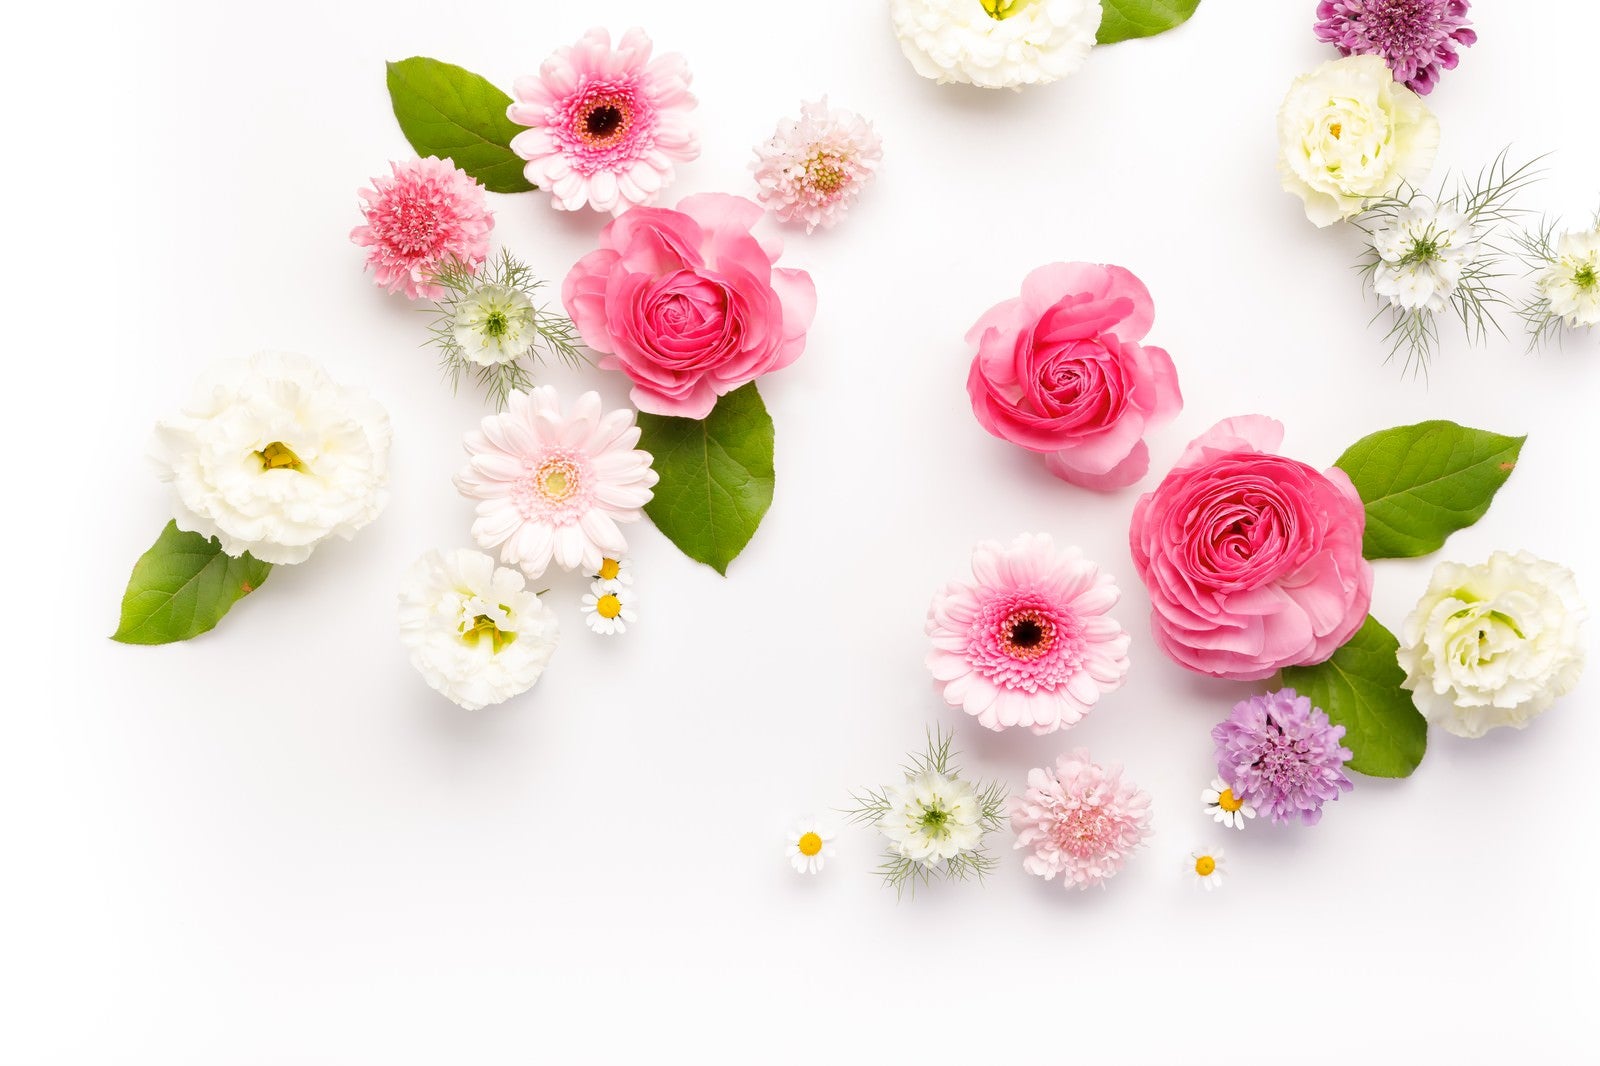 「お花のストックフォト」の写真